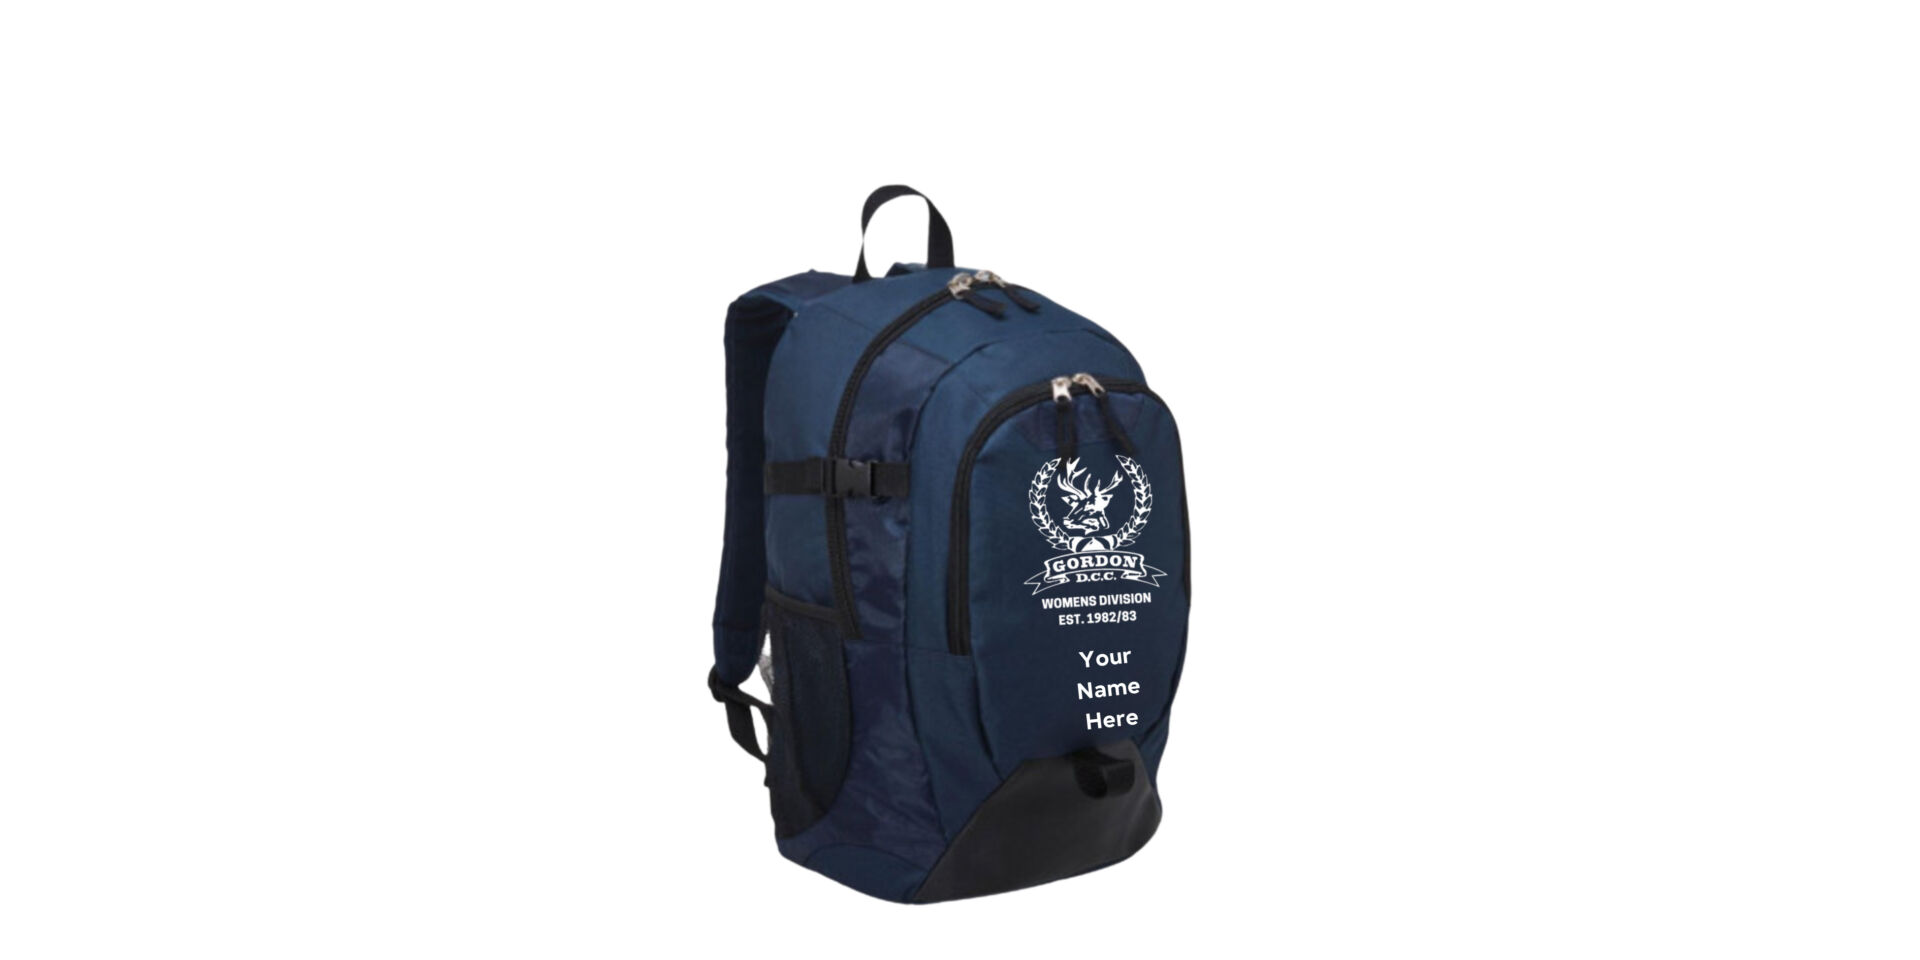 GWDCC final mock ups Backpack